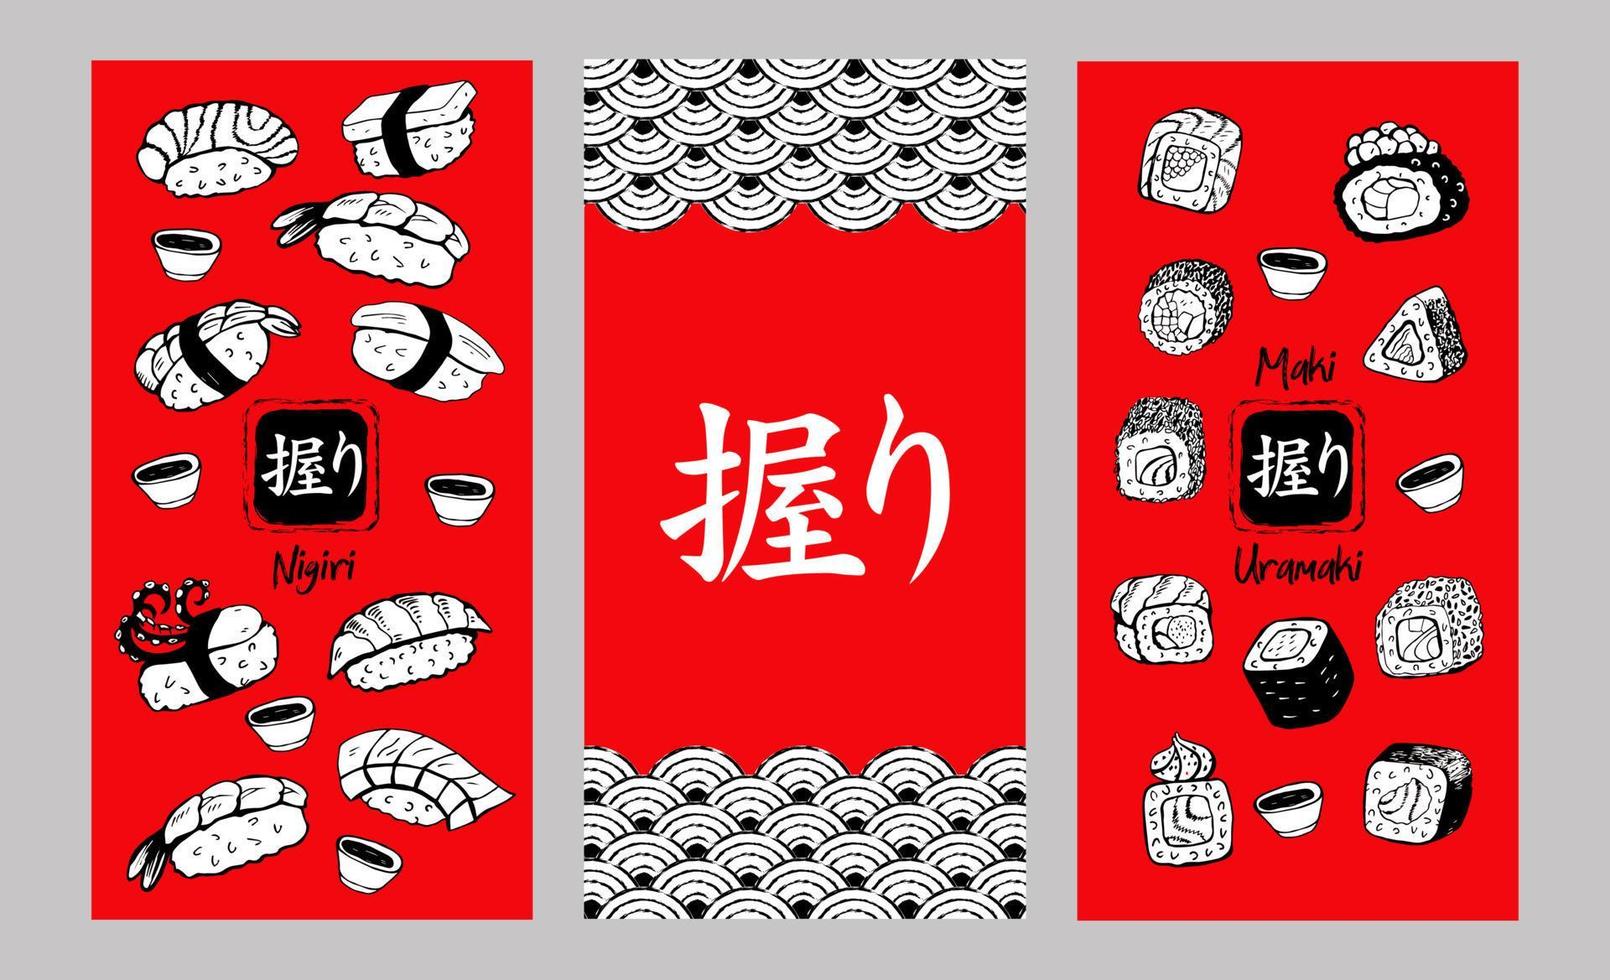 conjunto de sushi y rollos japoneses diferentes dibujados a mano. ilustración vectorial. el carácter japonés significa sushi. vector